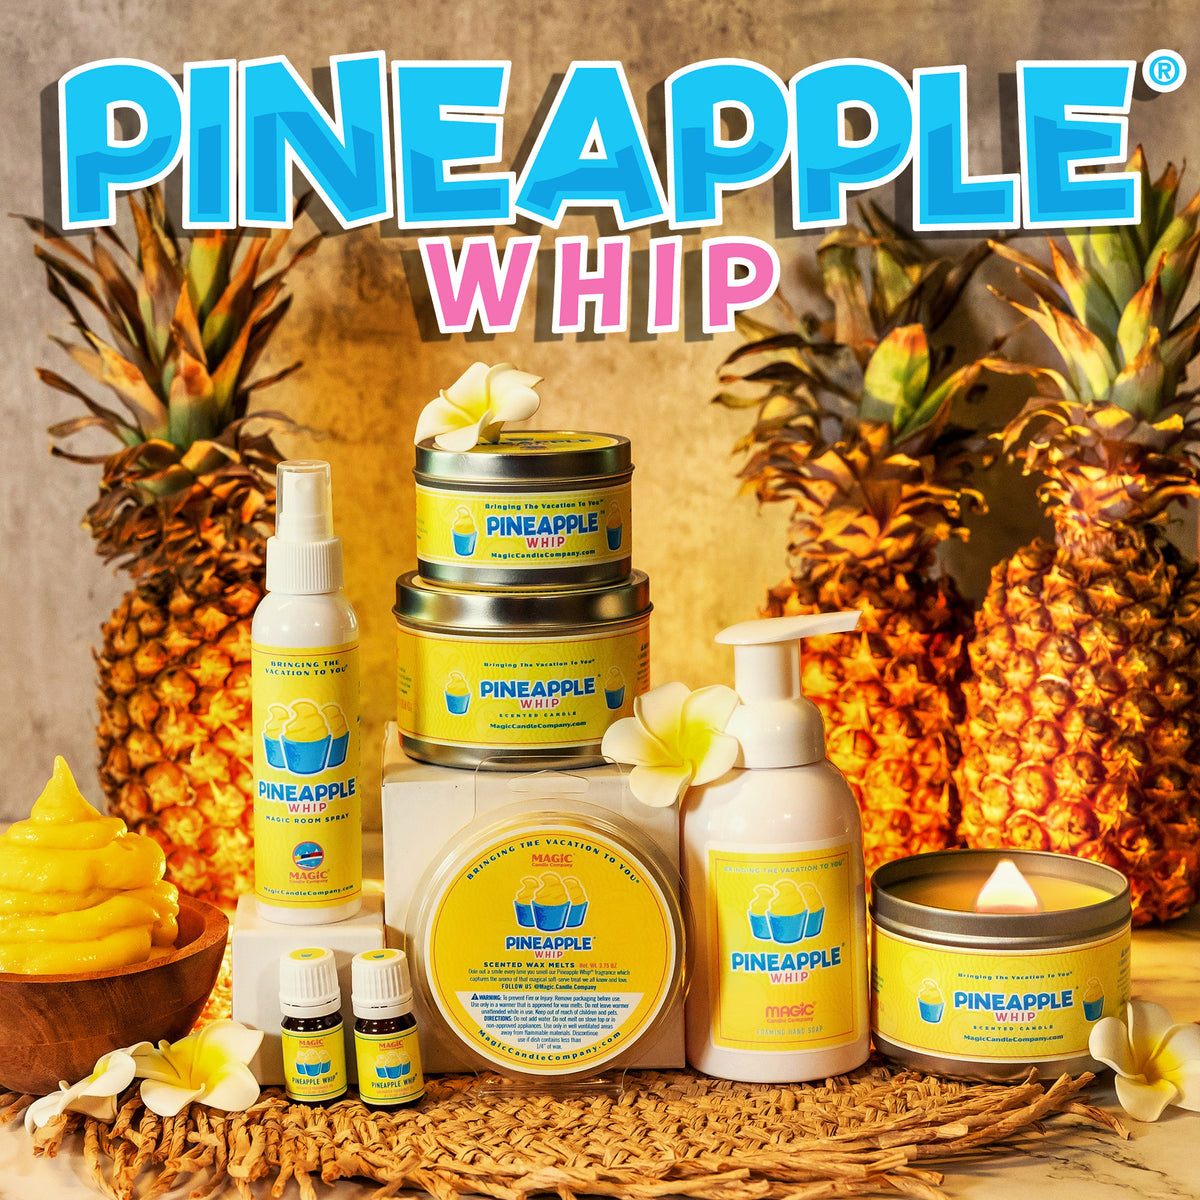 Pineapple Whip fragrance